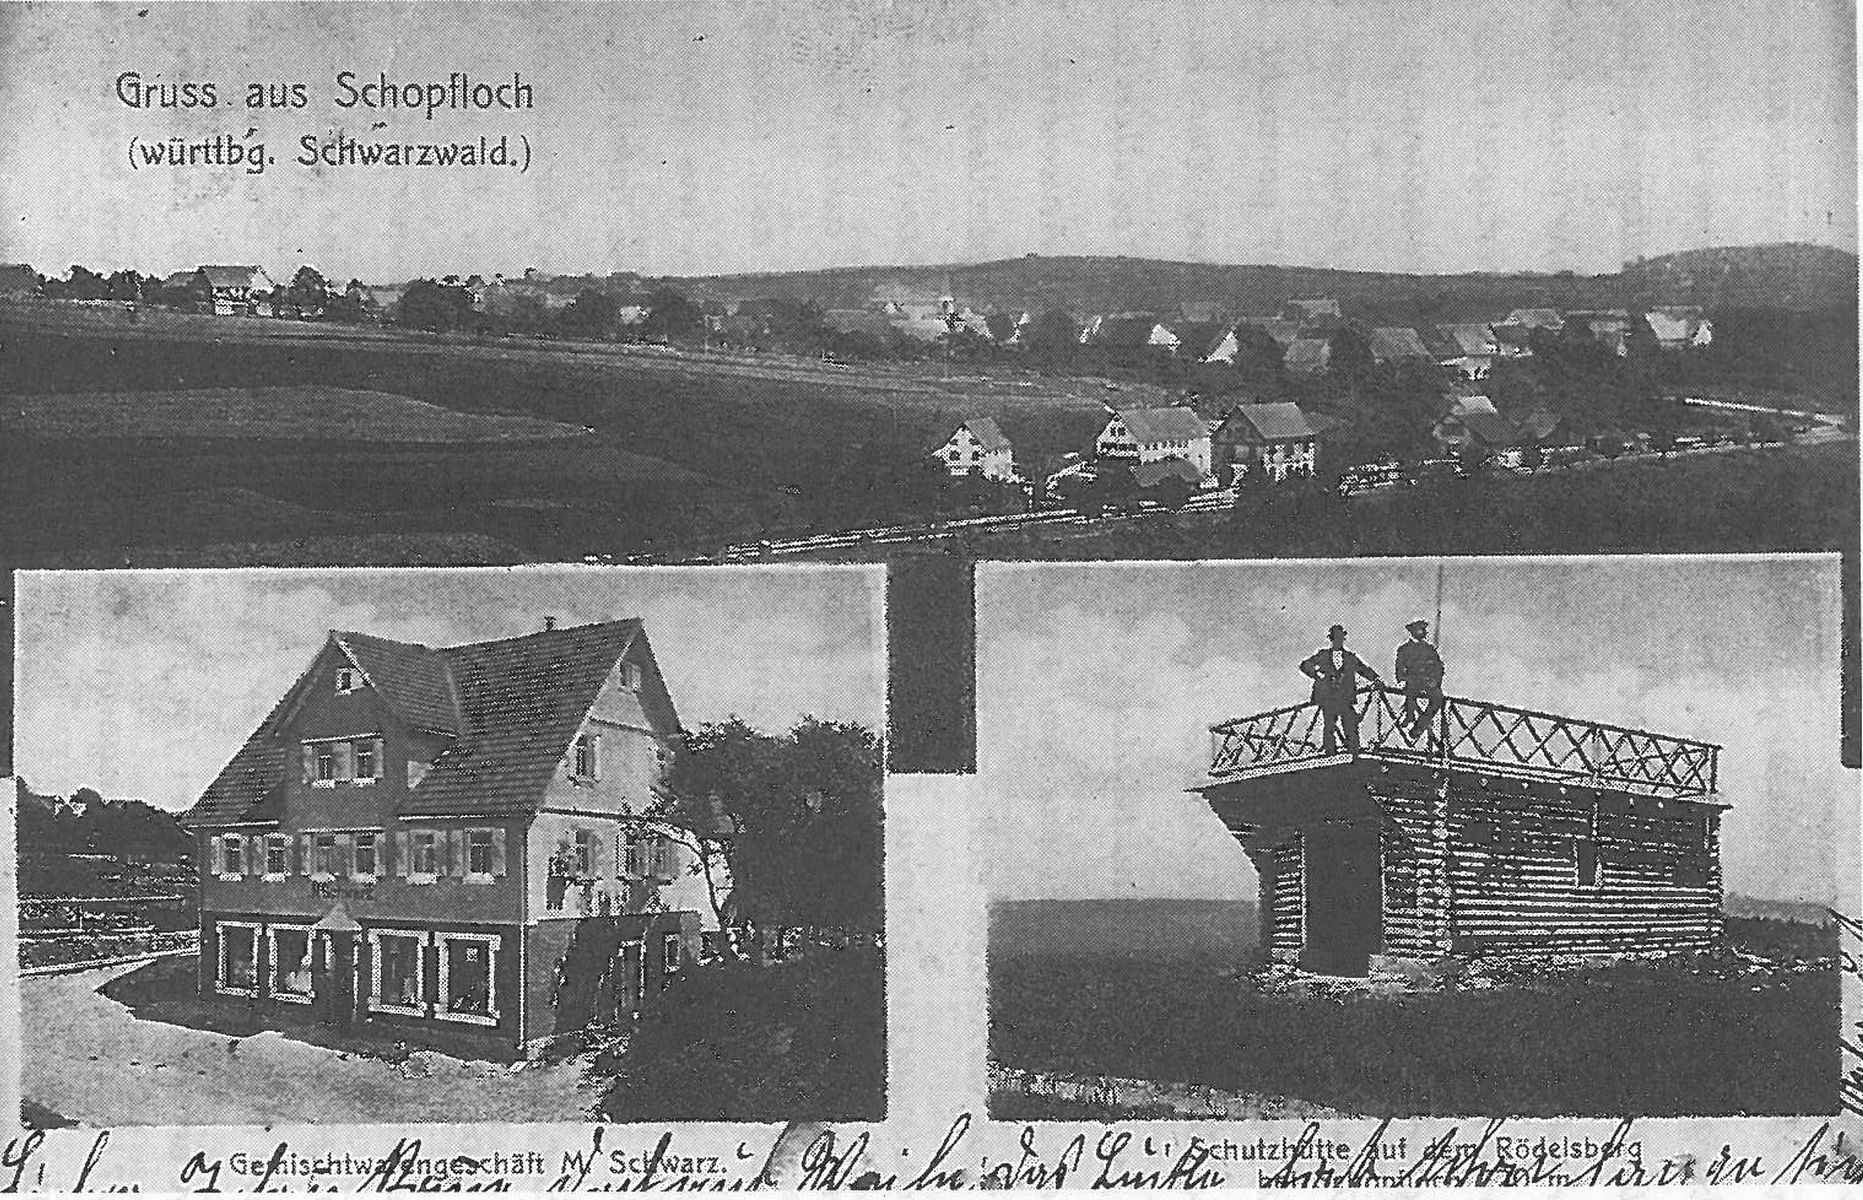  Schopflocher Skizzen Ansichtskarte aus dem Jahr 1901 - Bild wird mit einem Klick vergrößert 